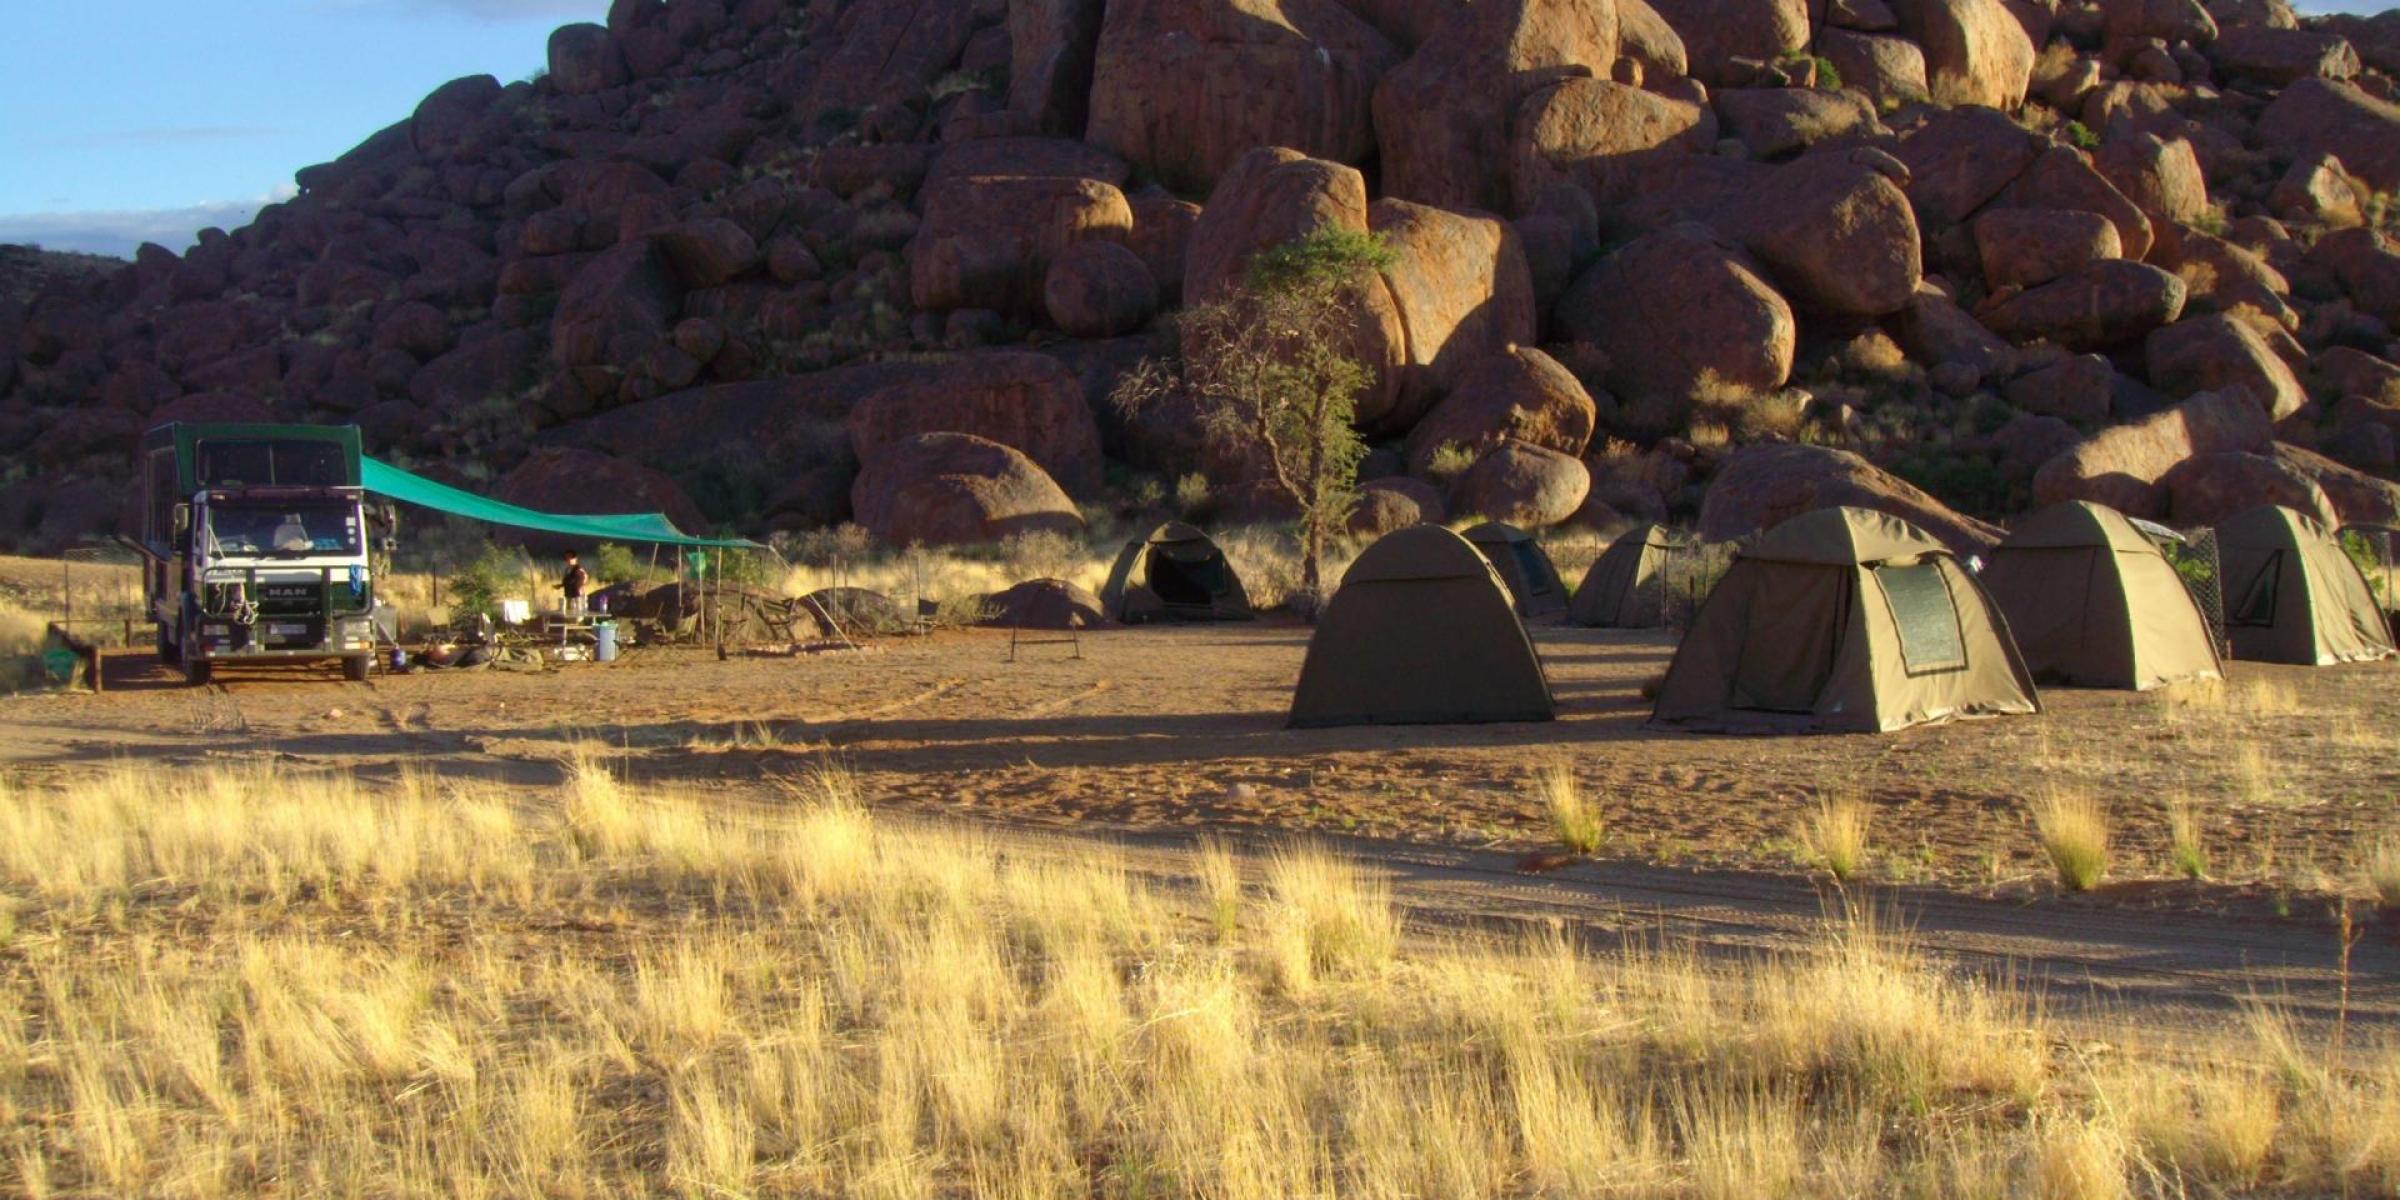 Camping Safari: Afrika auf einer Camping Safari mit Zelt und Truck entdecken. Camping Safari Touren durch die Namib Wüste, das pure Afrika Abenteuer